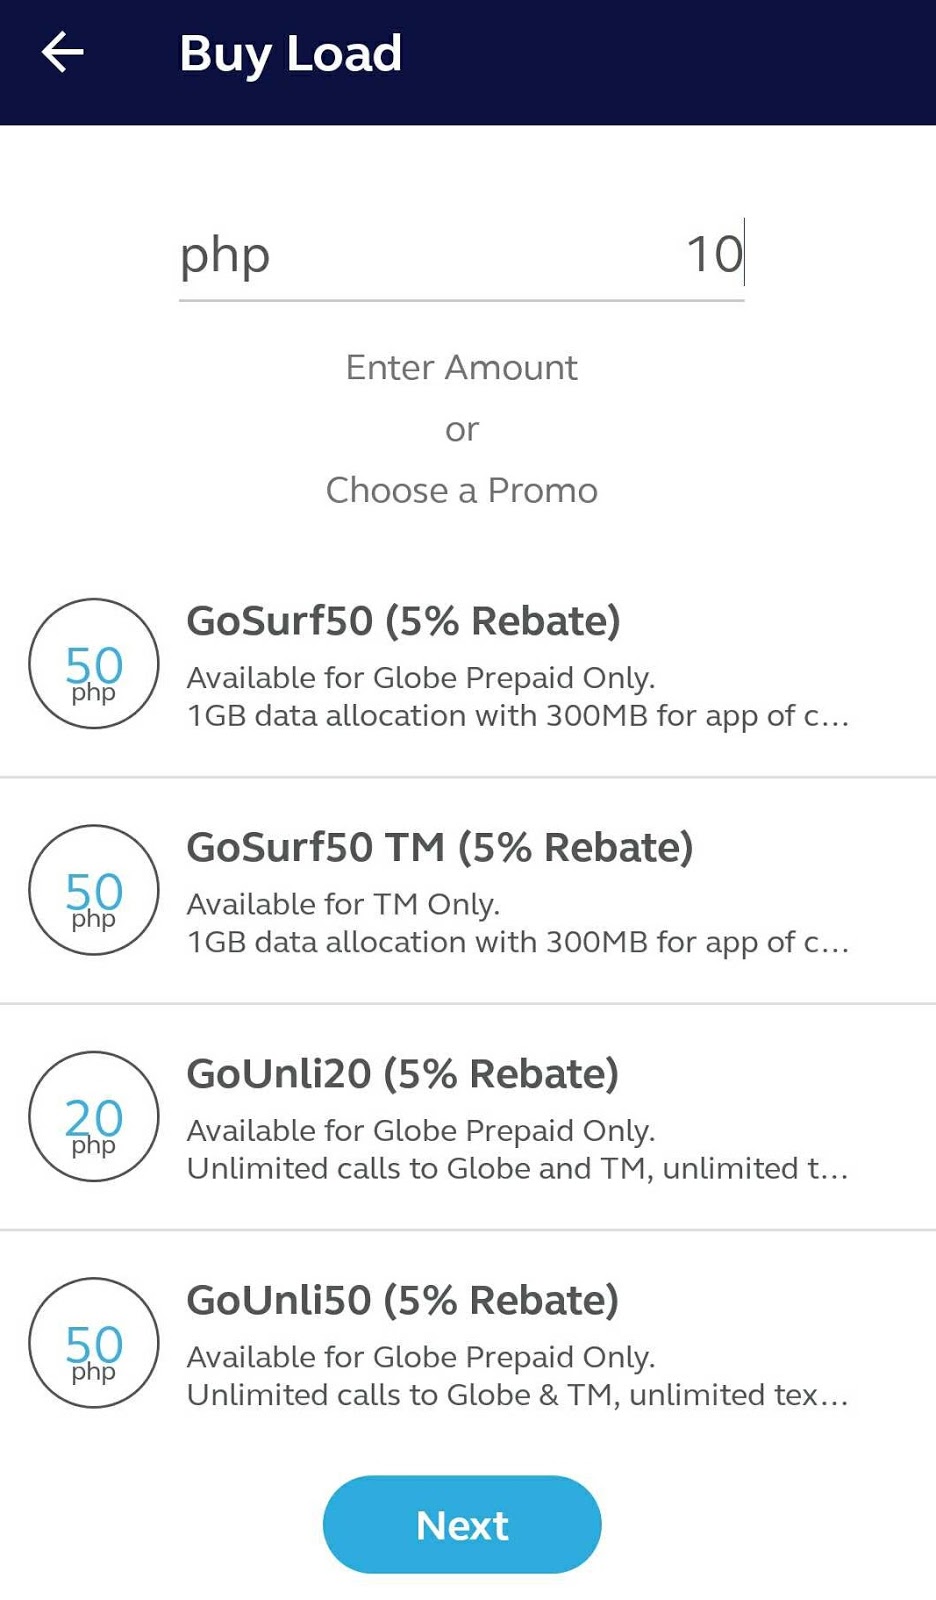 gcash-load-and-get-5-rebate-using-this-app